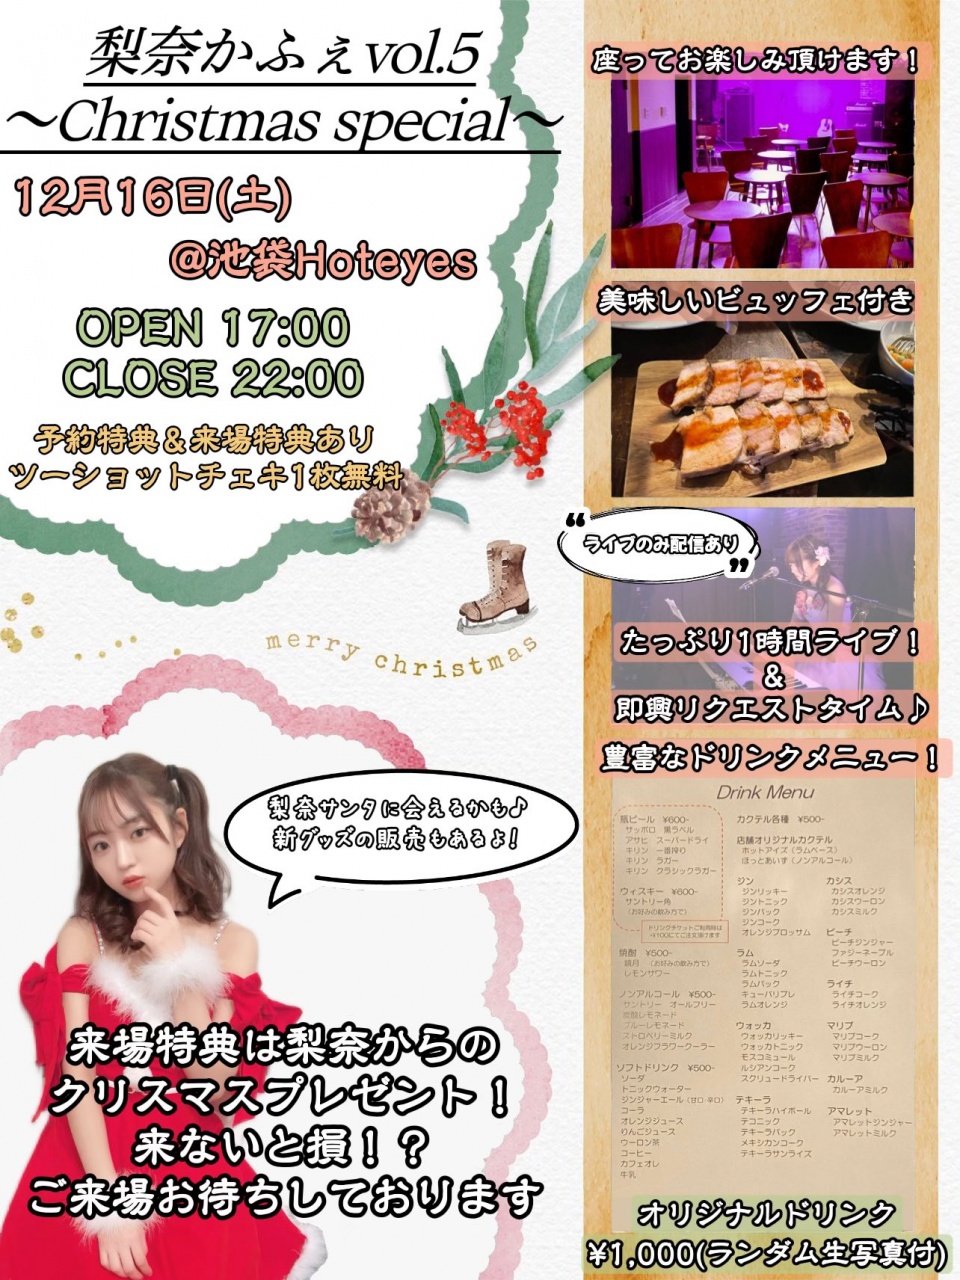 梨奈かふぇVol.5〜Christmas special〜
